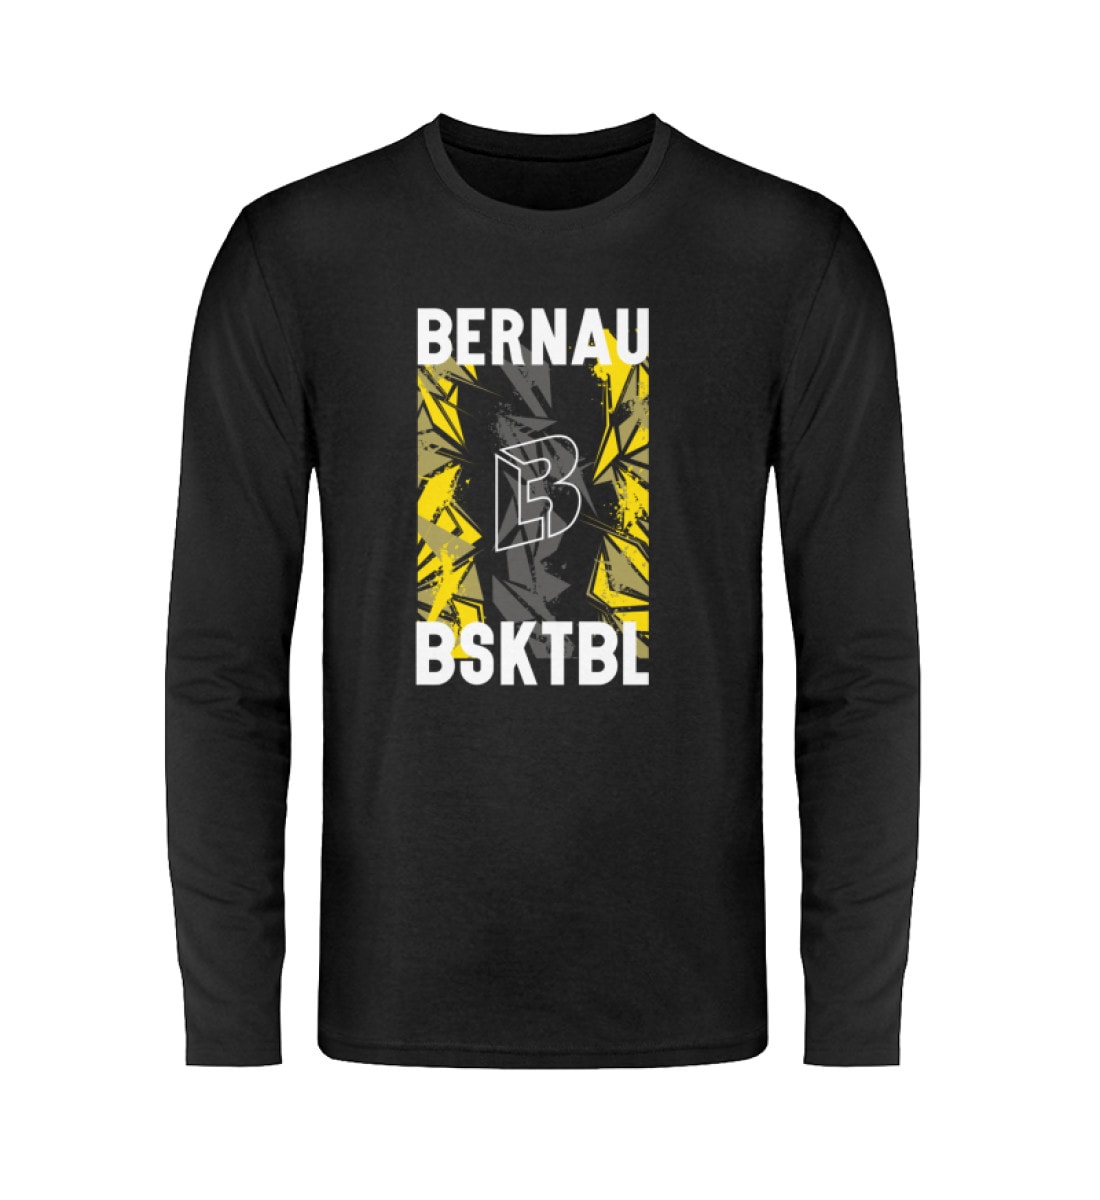 Bernau Bsktbl - Unisex Long Sleeve T-Shirt-16